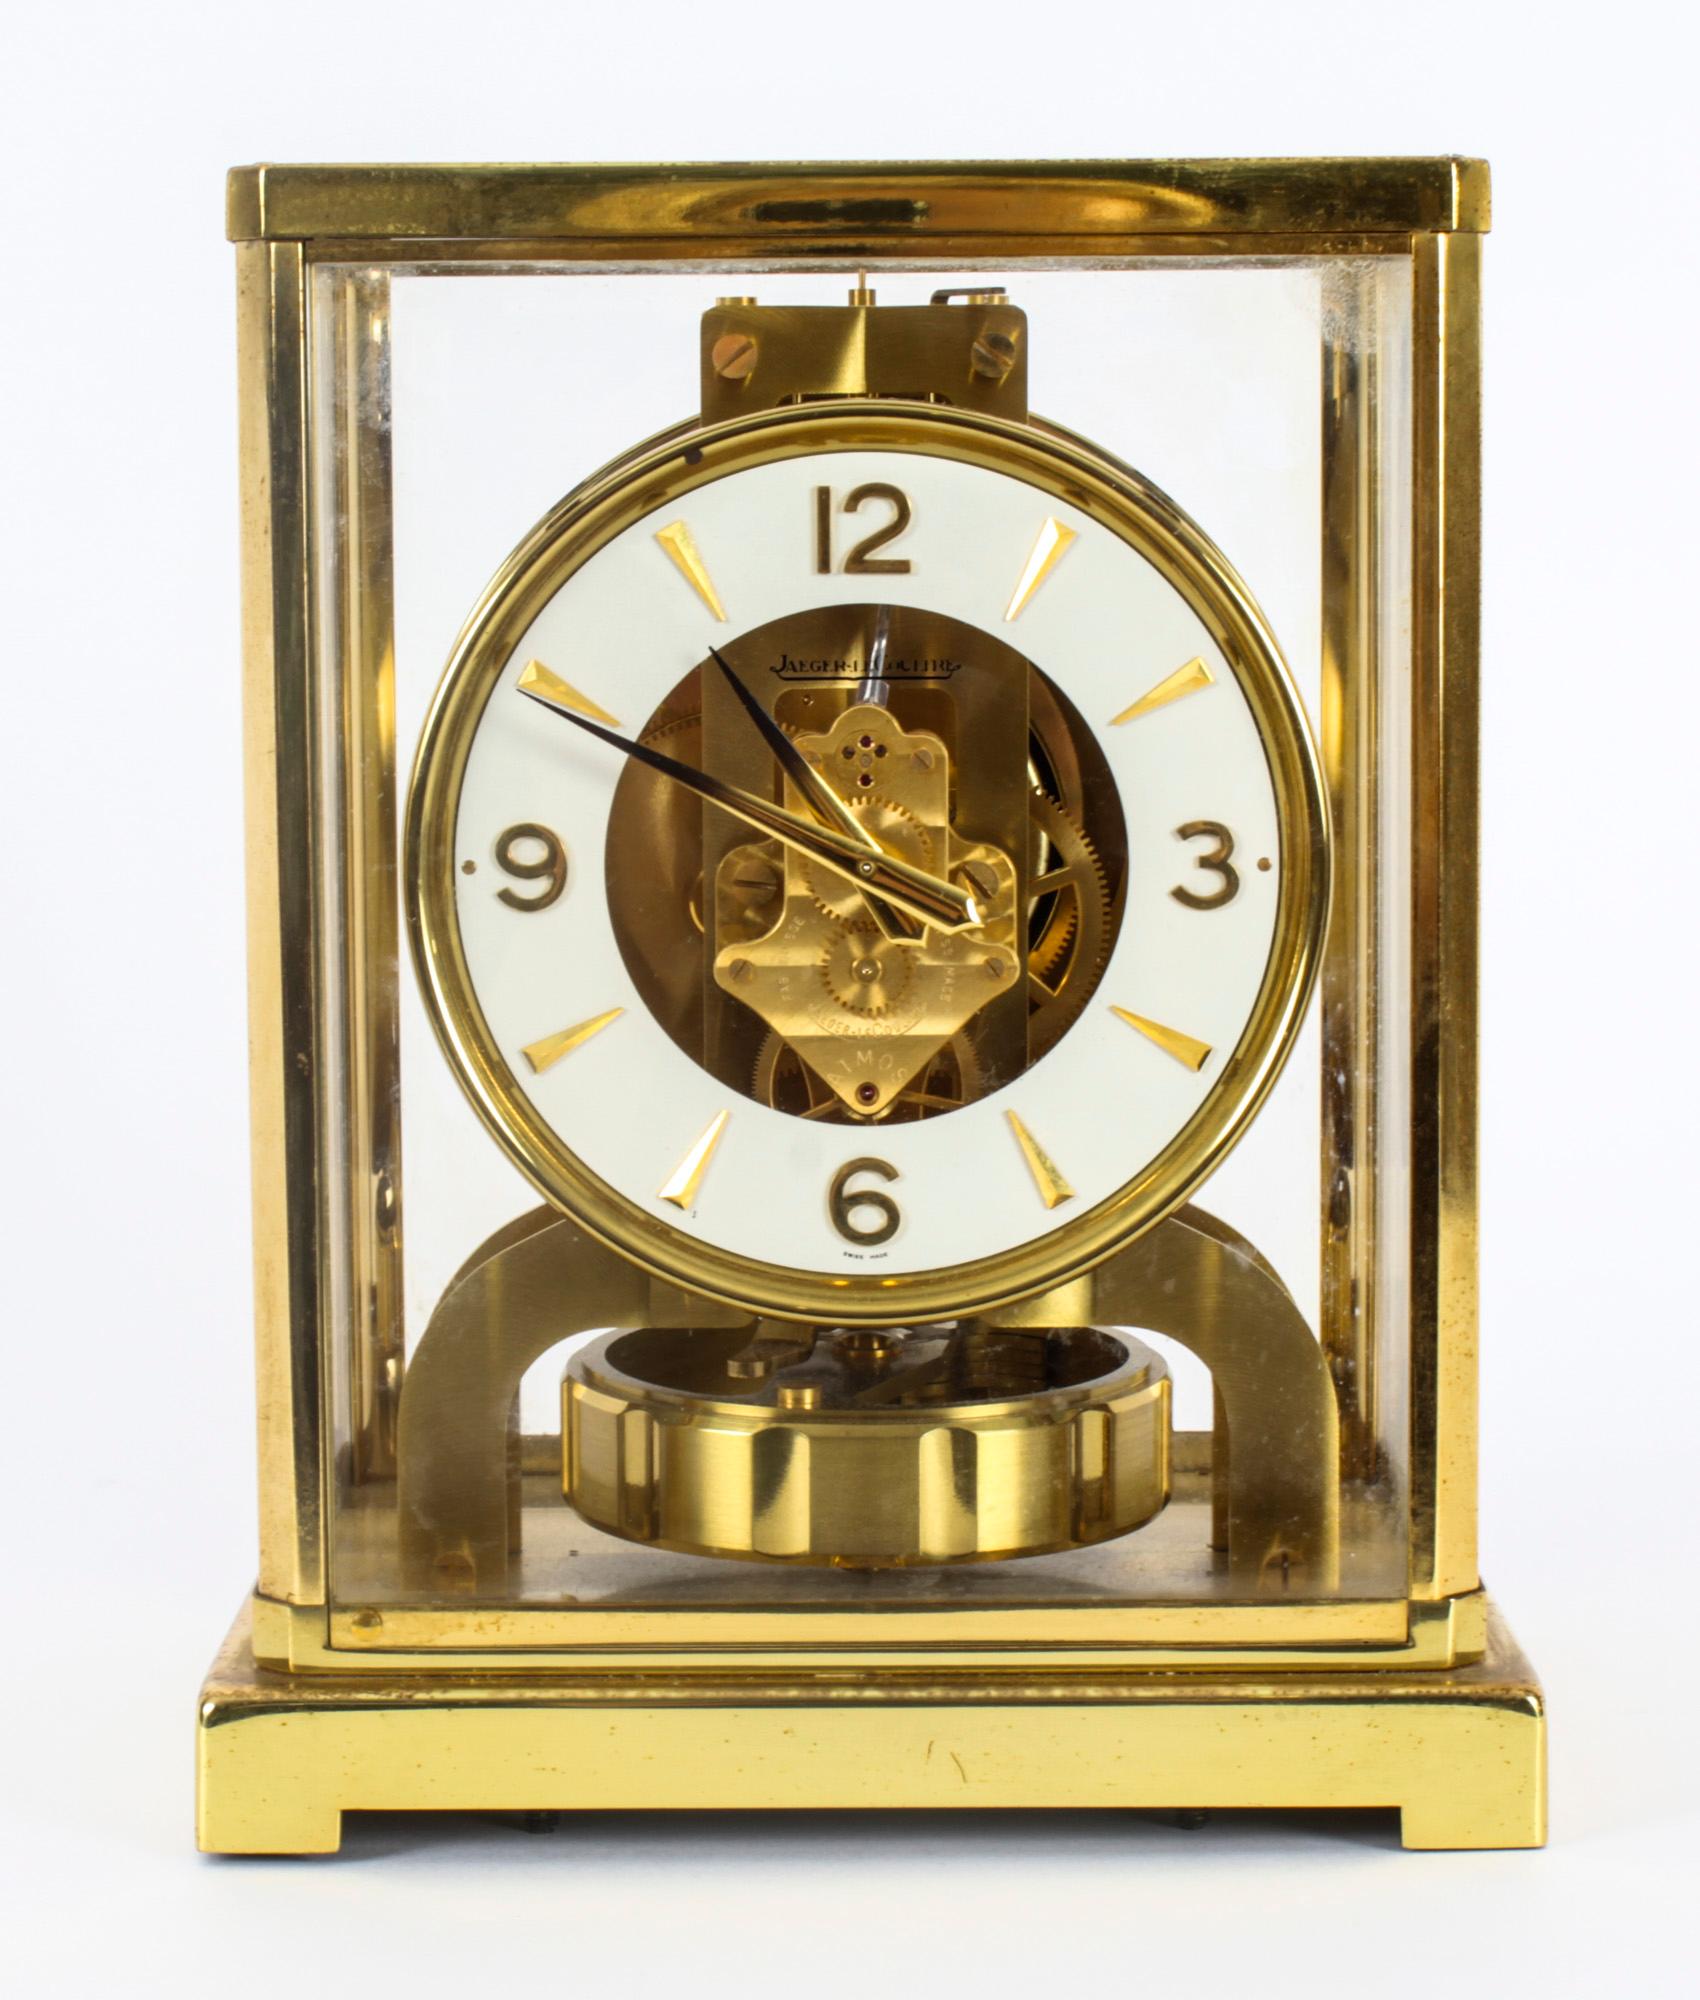 Il s'agit d'une très élégante pendule perpétuelle Atmos de Jaeger-LeCoultre, avec un mouvement à rubis portant leur réf. 138326 et datant du milieu du 20e siècle.

L'horloge est présentée dans un boîtier rectangulaire en laiton poli et doré, avec